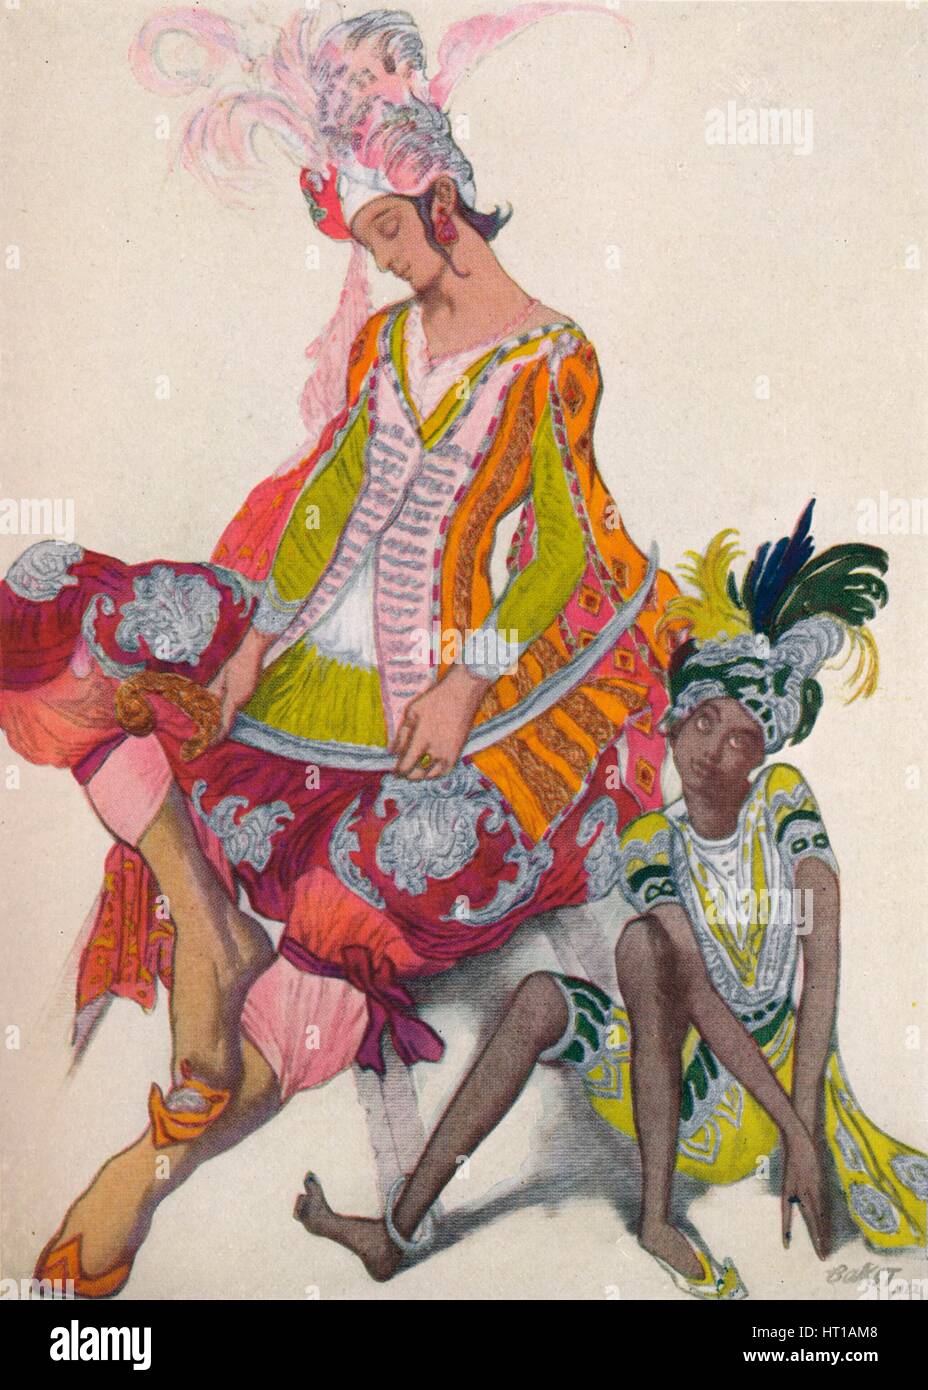 'Prince Et Esclave Revant', 1922, (1923). Artist: Leon Bakst. Stock Photo